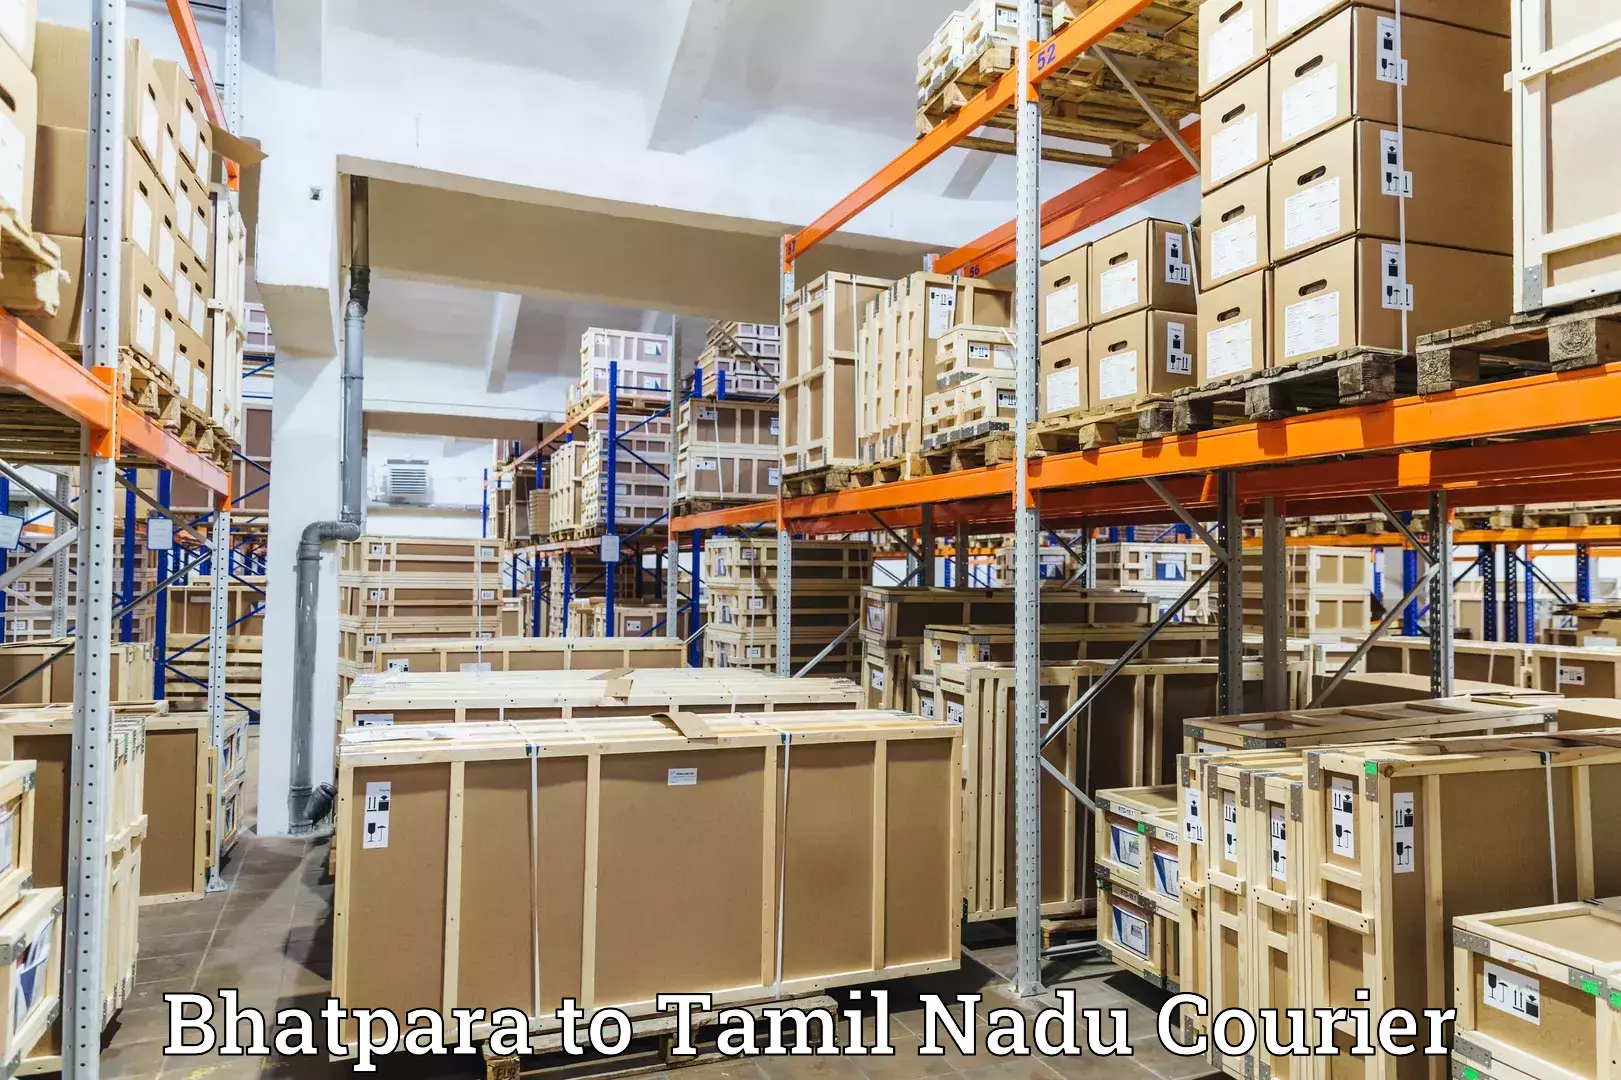 Quality courier partnerships Bhatpara to Tiruchirappalli